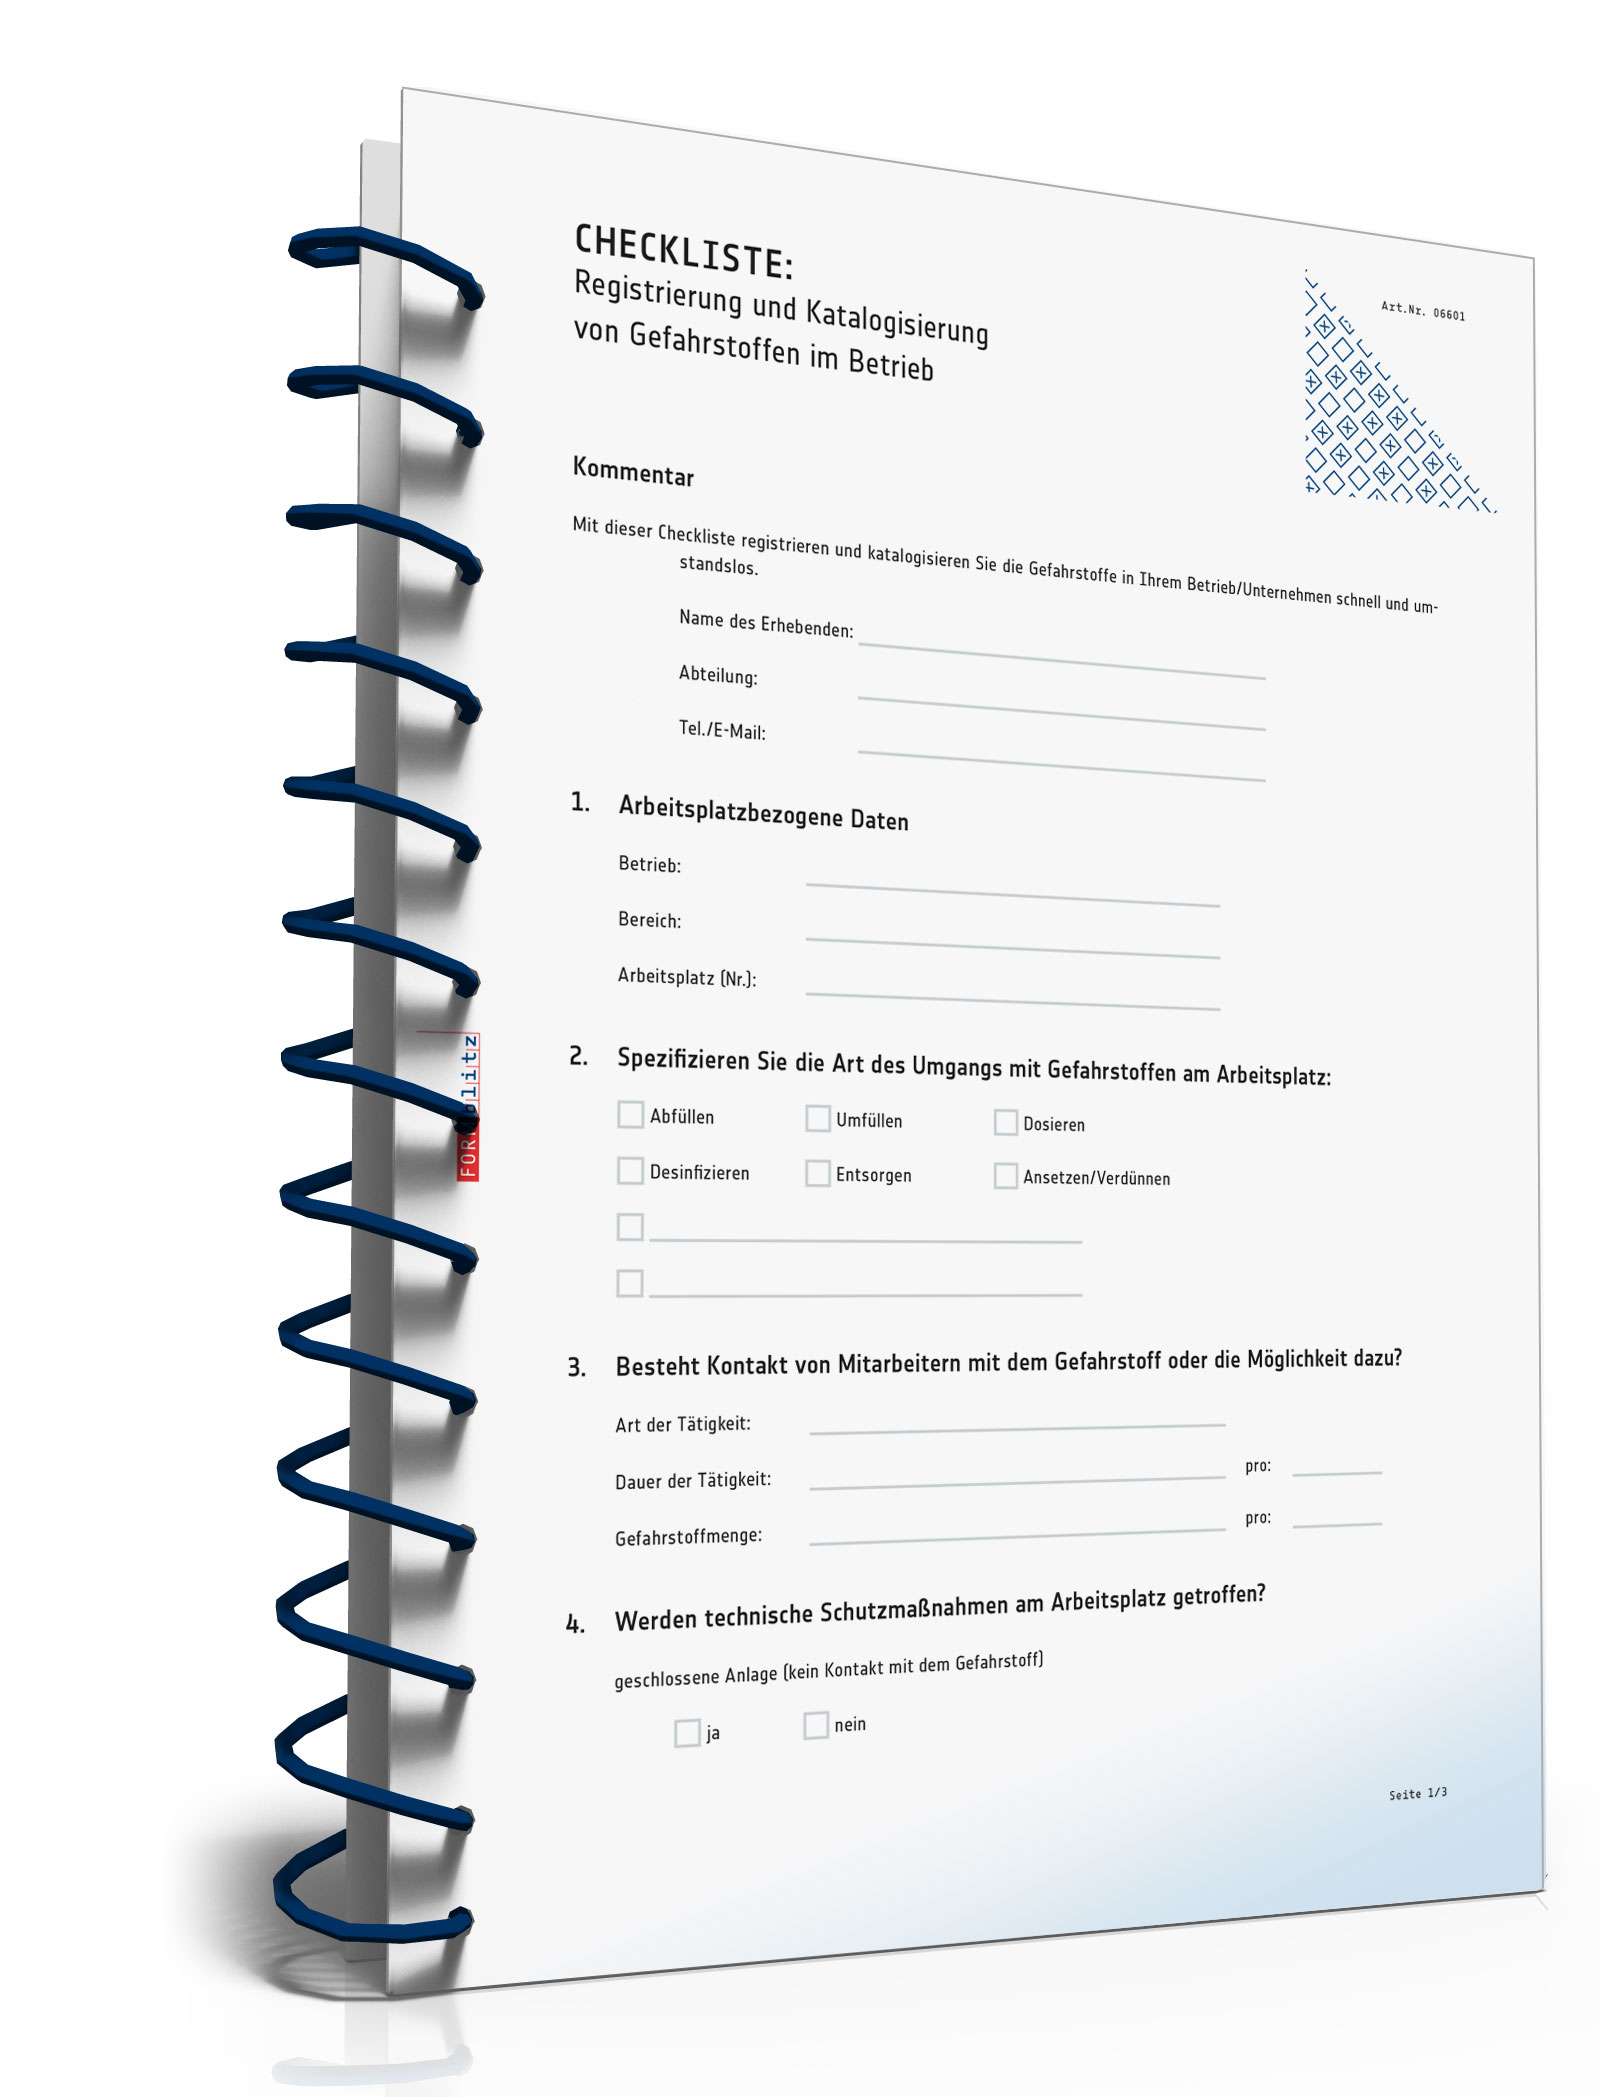 Hauptbild des Produkts: Checkliste Registrierung/Katalogisierung Gefahrstoffe